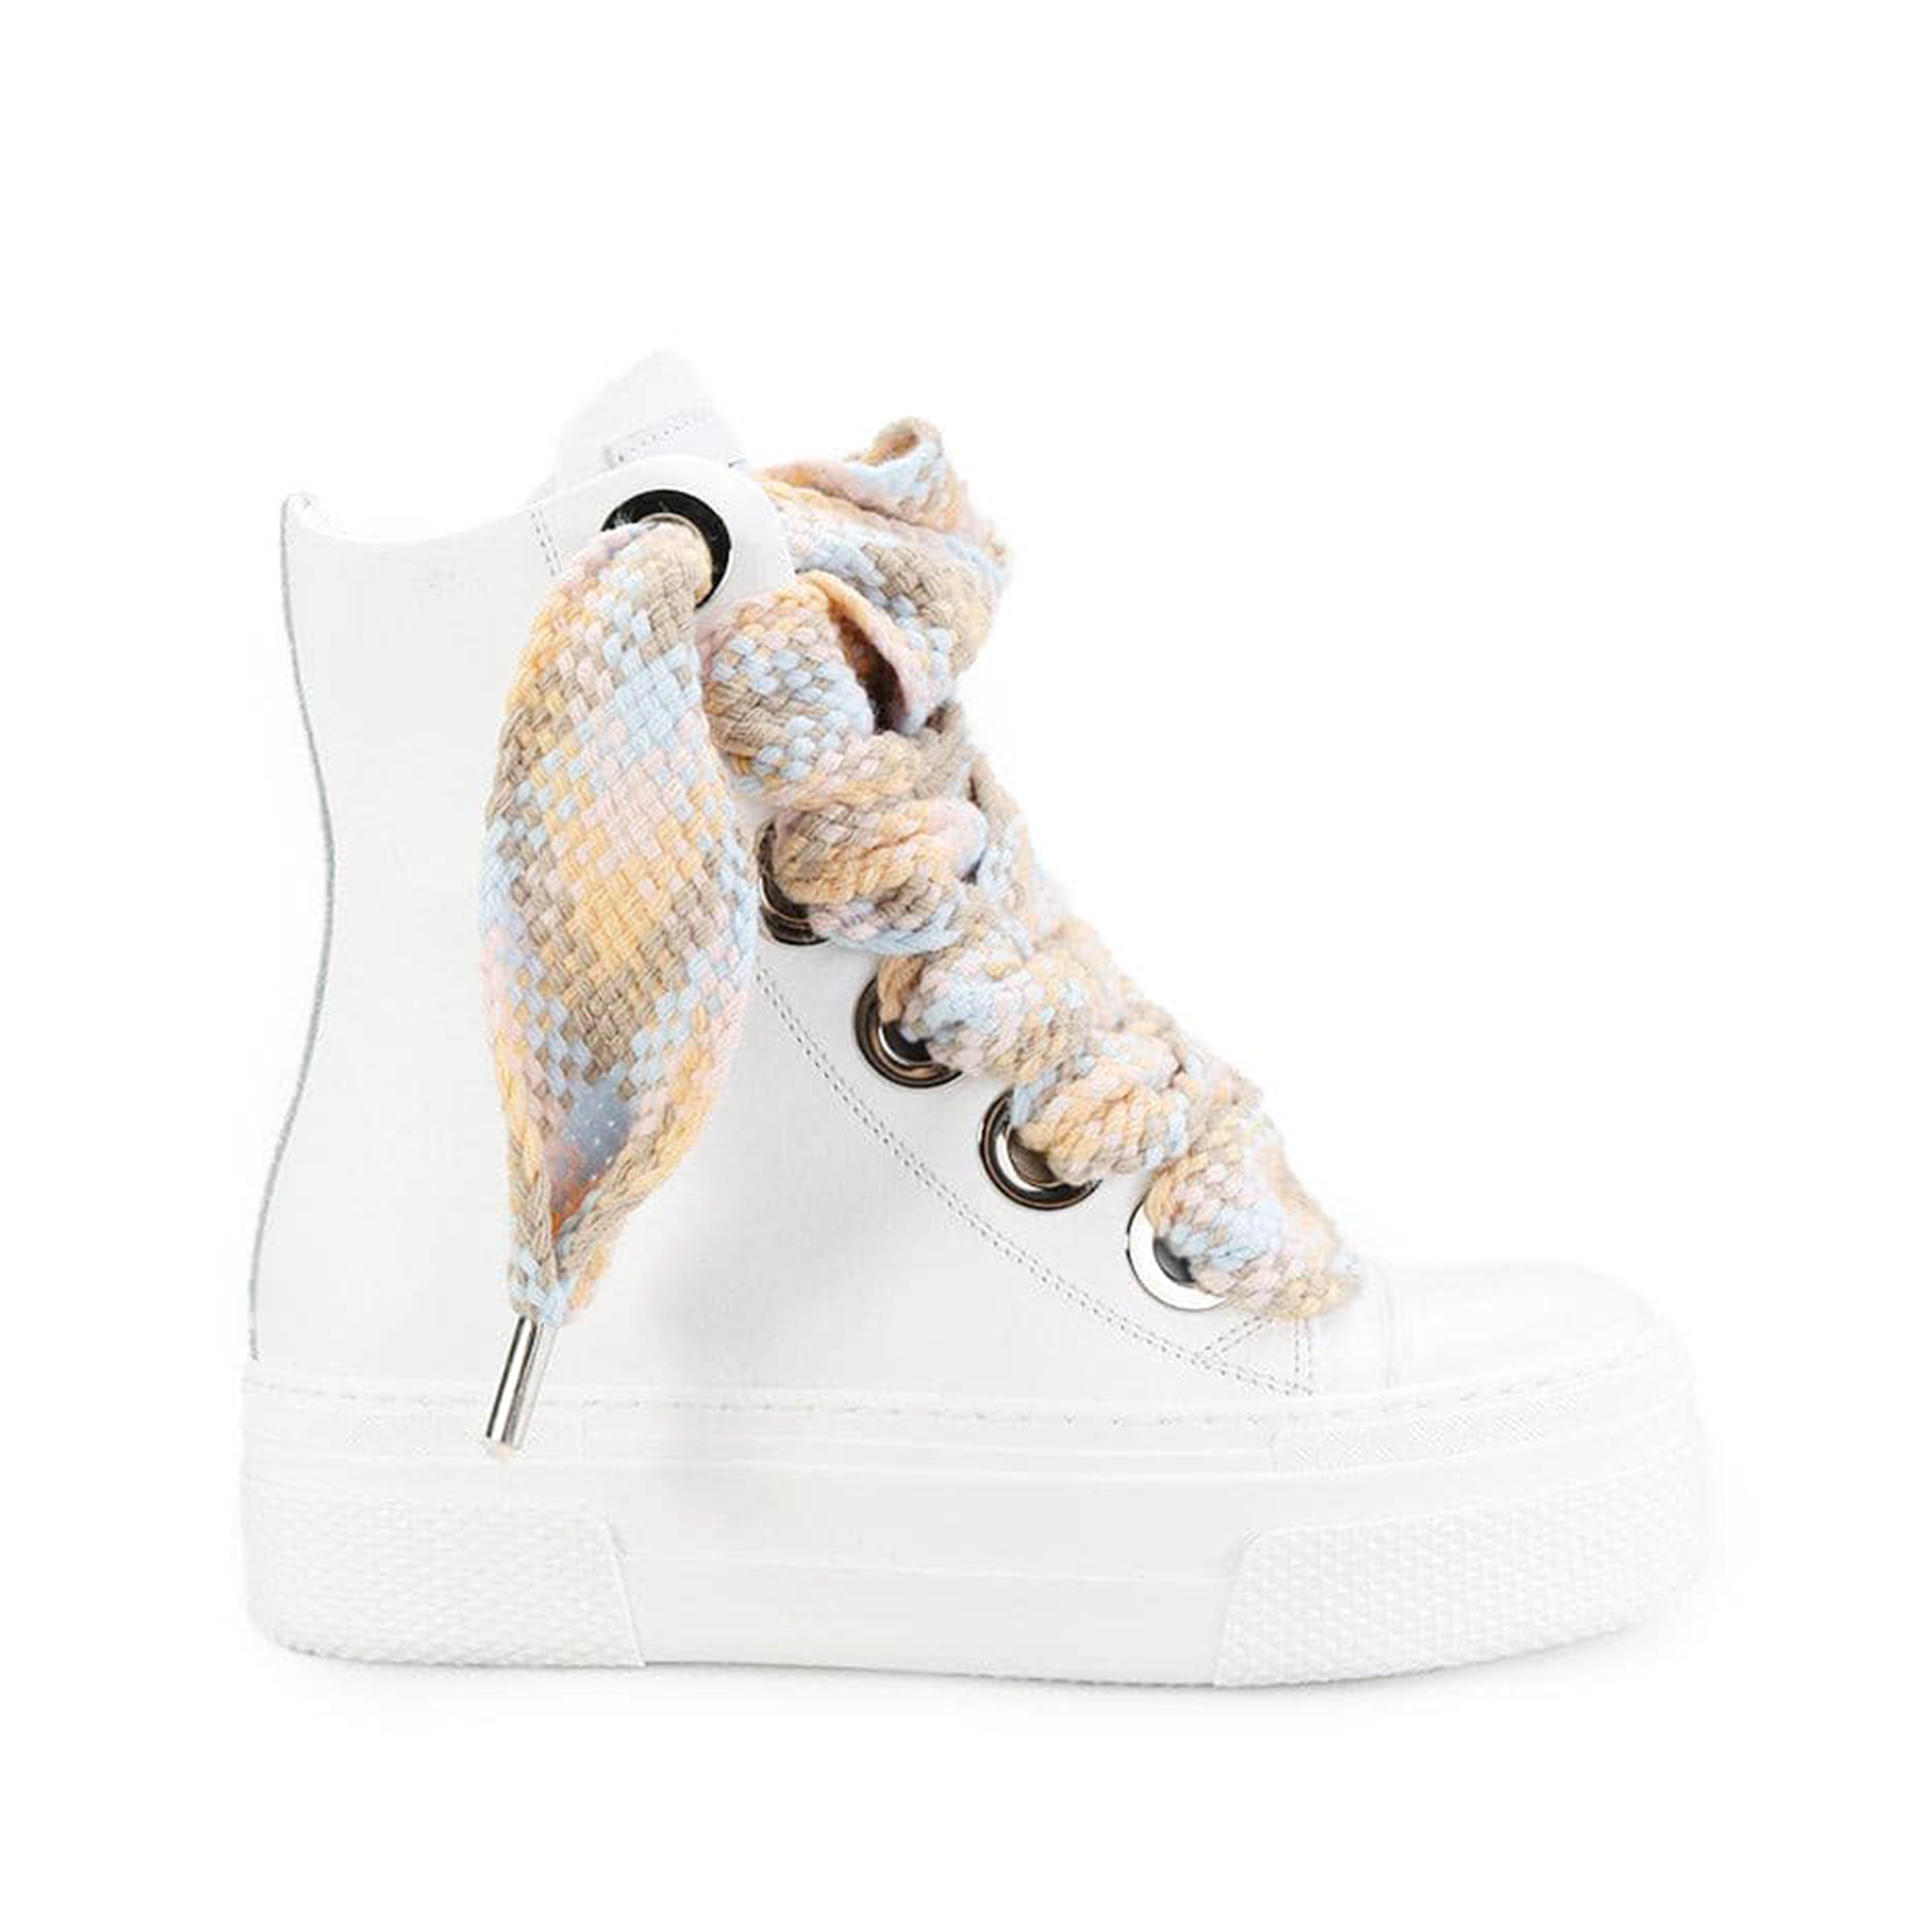 High Sneakers in white leather Calipso laccio cream multi